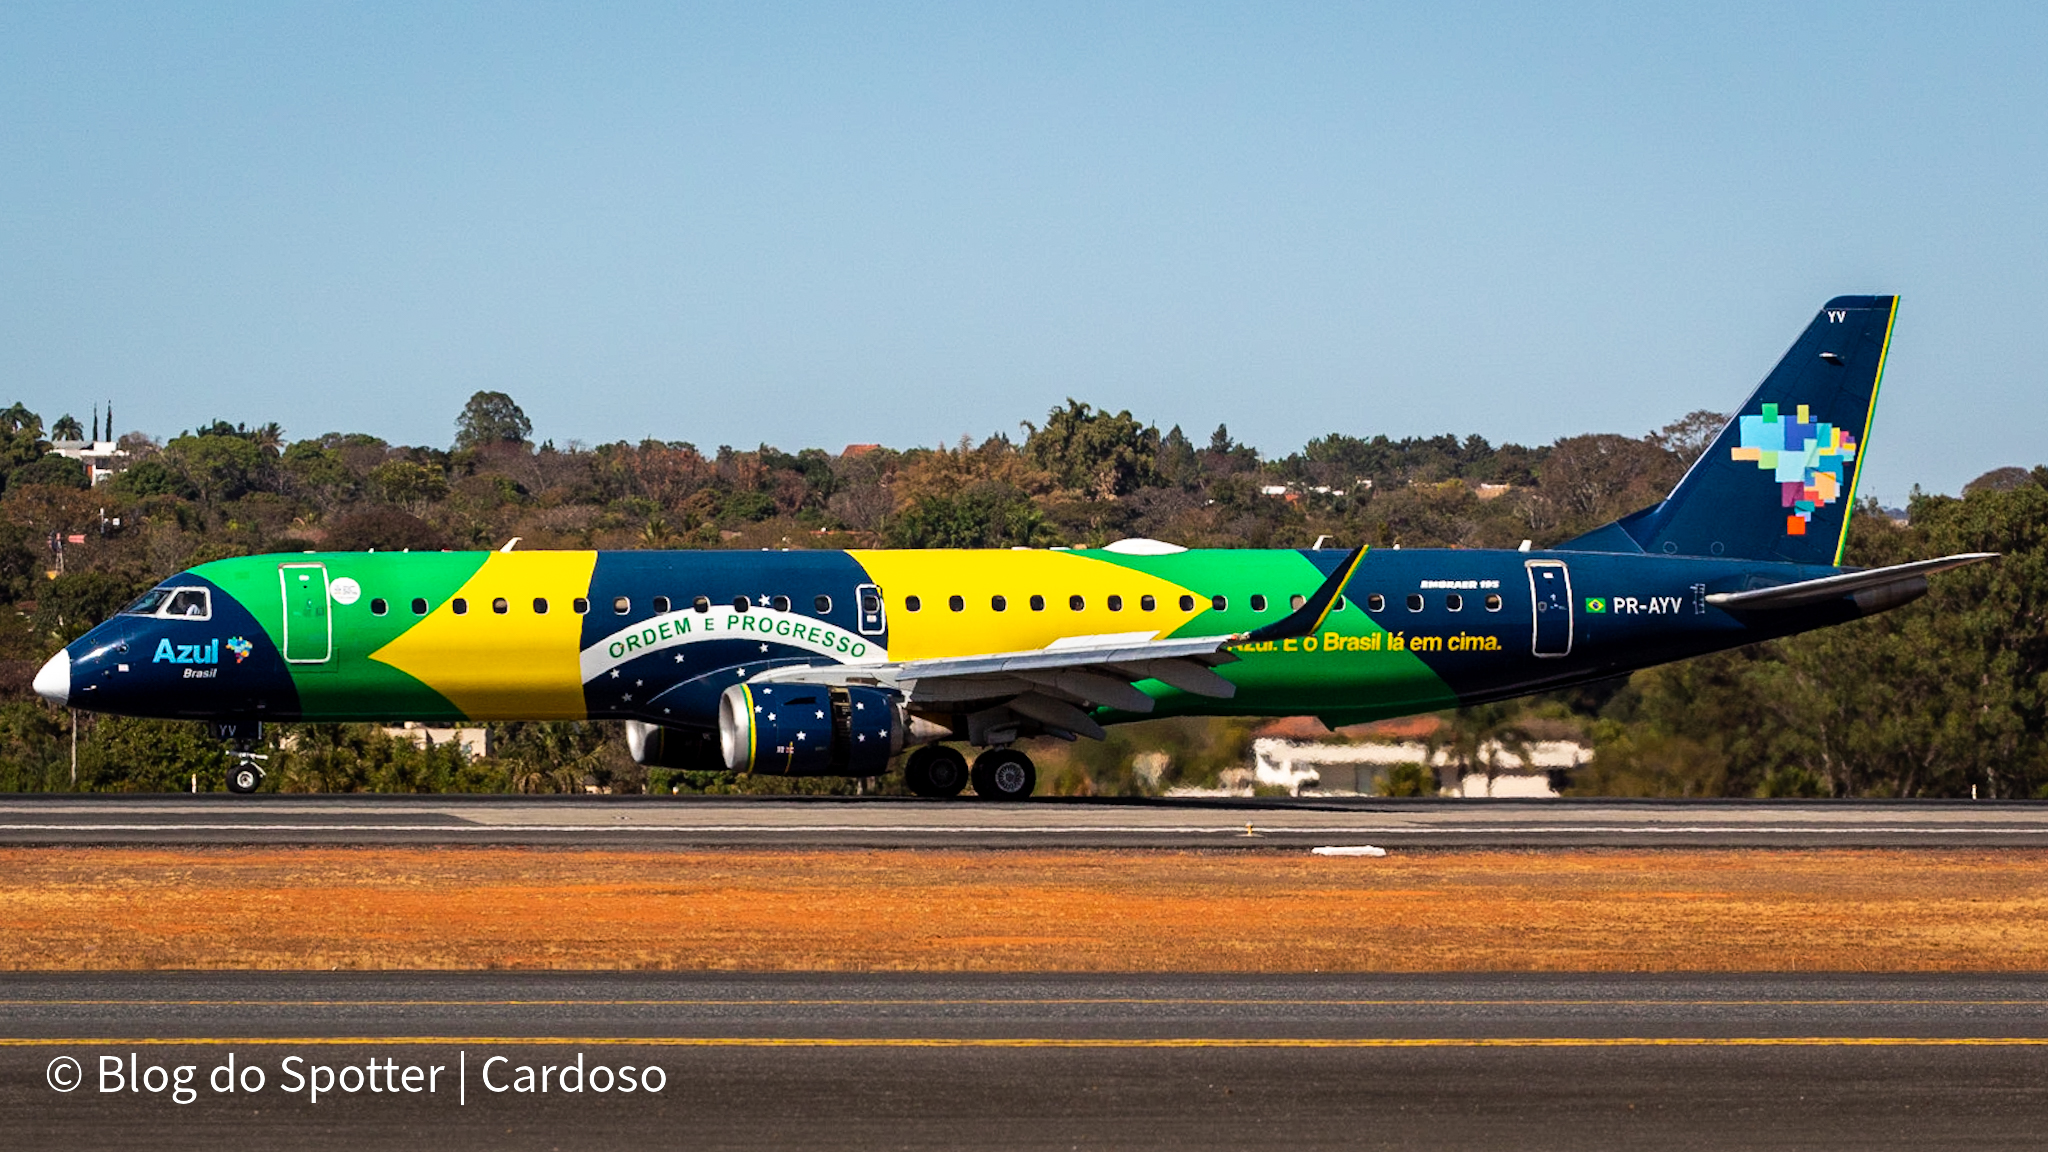 PR-AYV – Embraer 195 – Bandeirinha da Azul Linhas Aéreas- Spotter Day 2022 do Aeroporto de Brasília